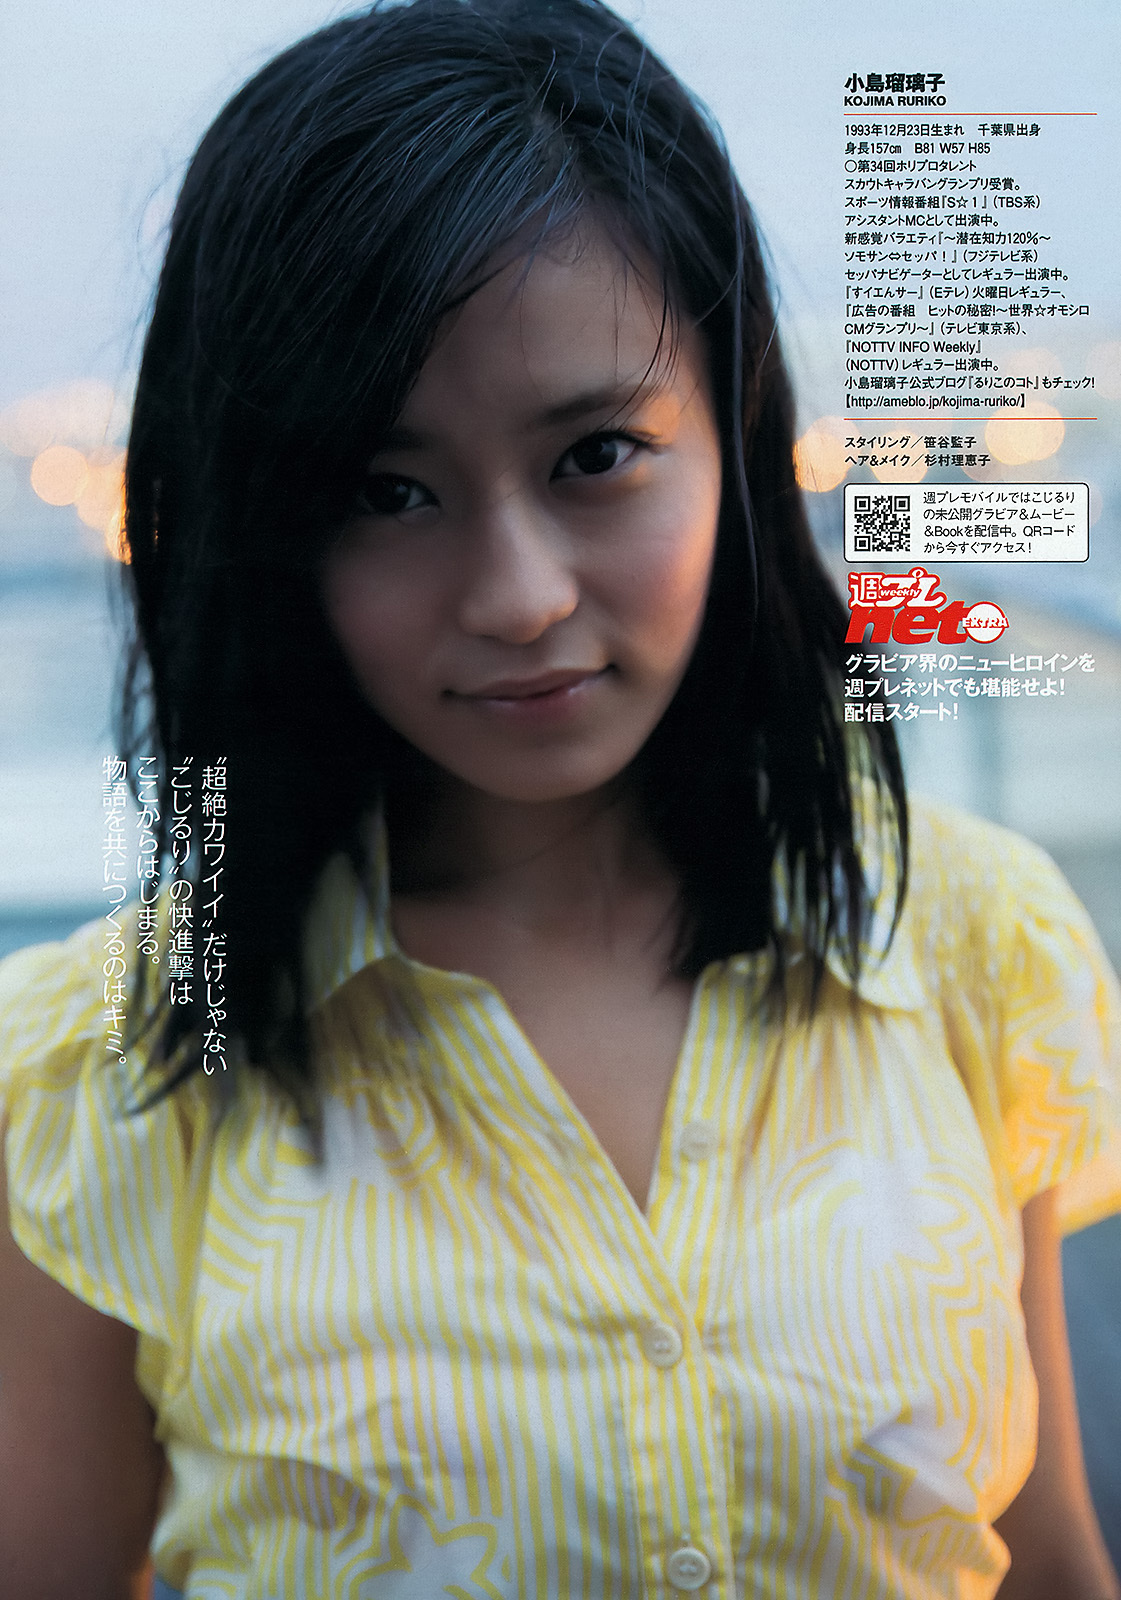 小島瑠璃子 岩﨑名美 壇密 内田理央[Weekly Playboy] 2013 No.13